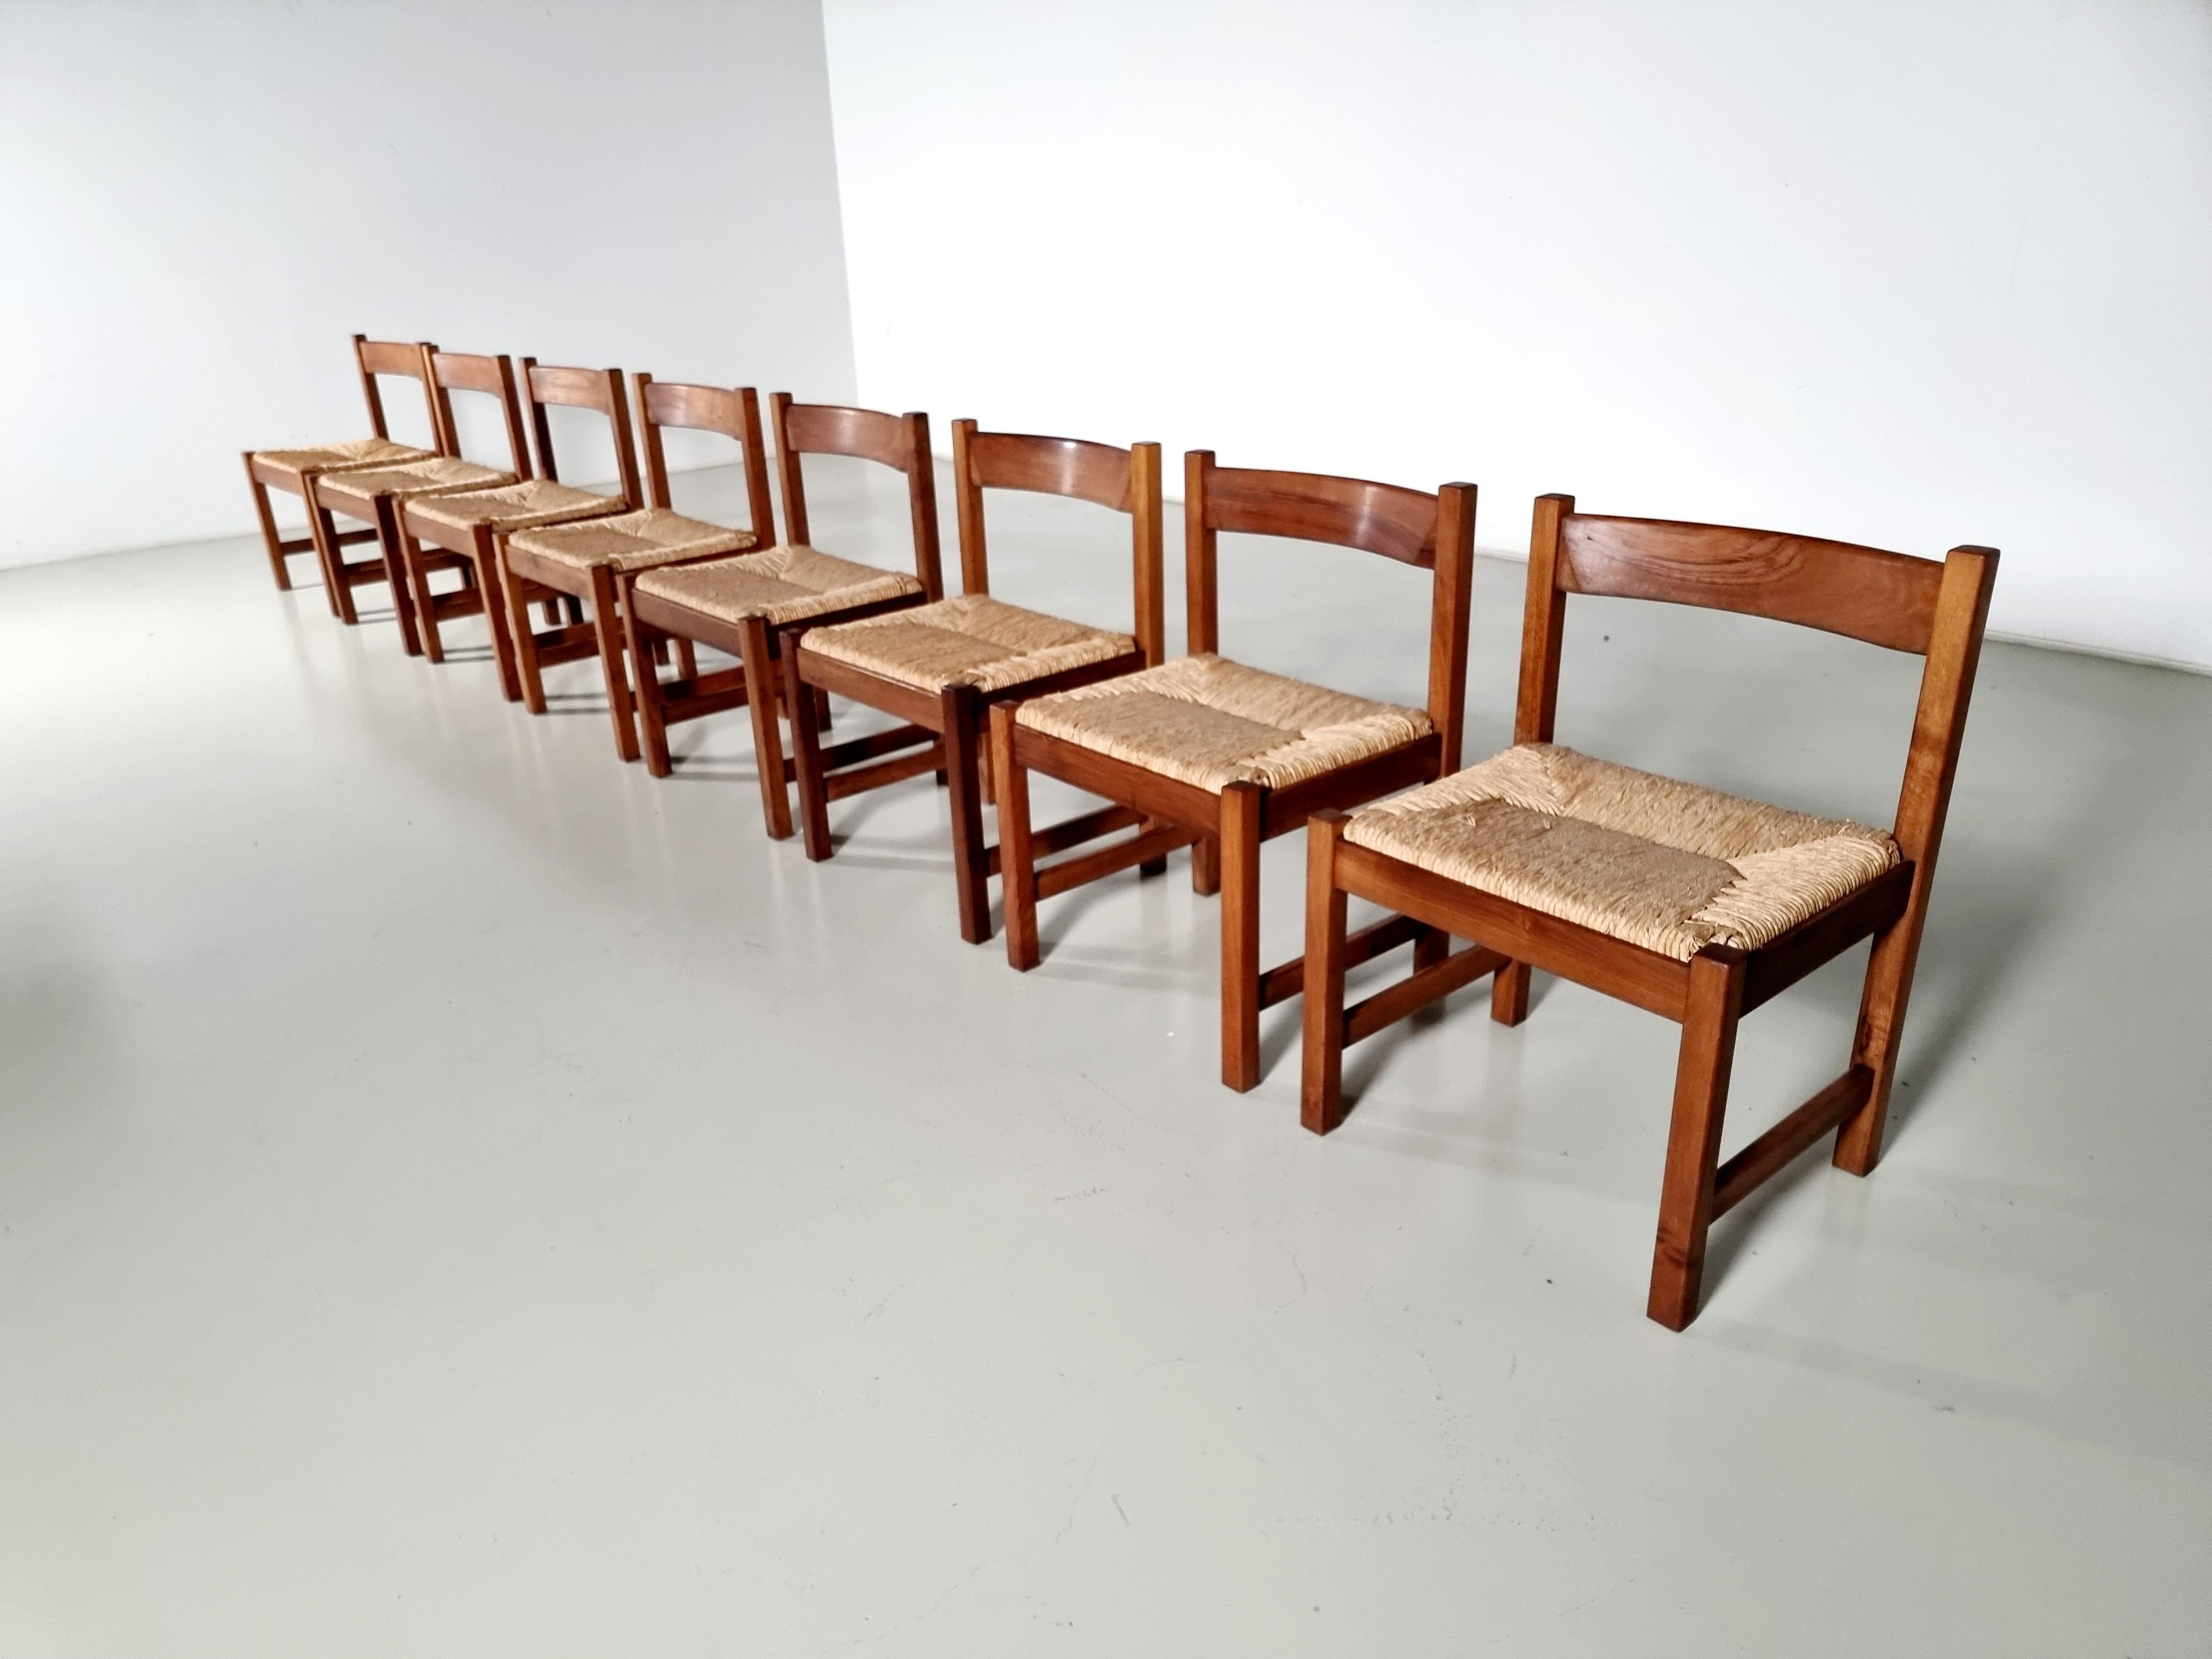 European Torbecchia Chairs in walnut and rush, Giovanni Michelucci for Poltronova, 1960s For Sale